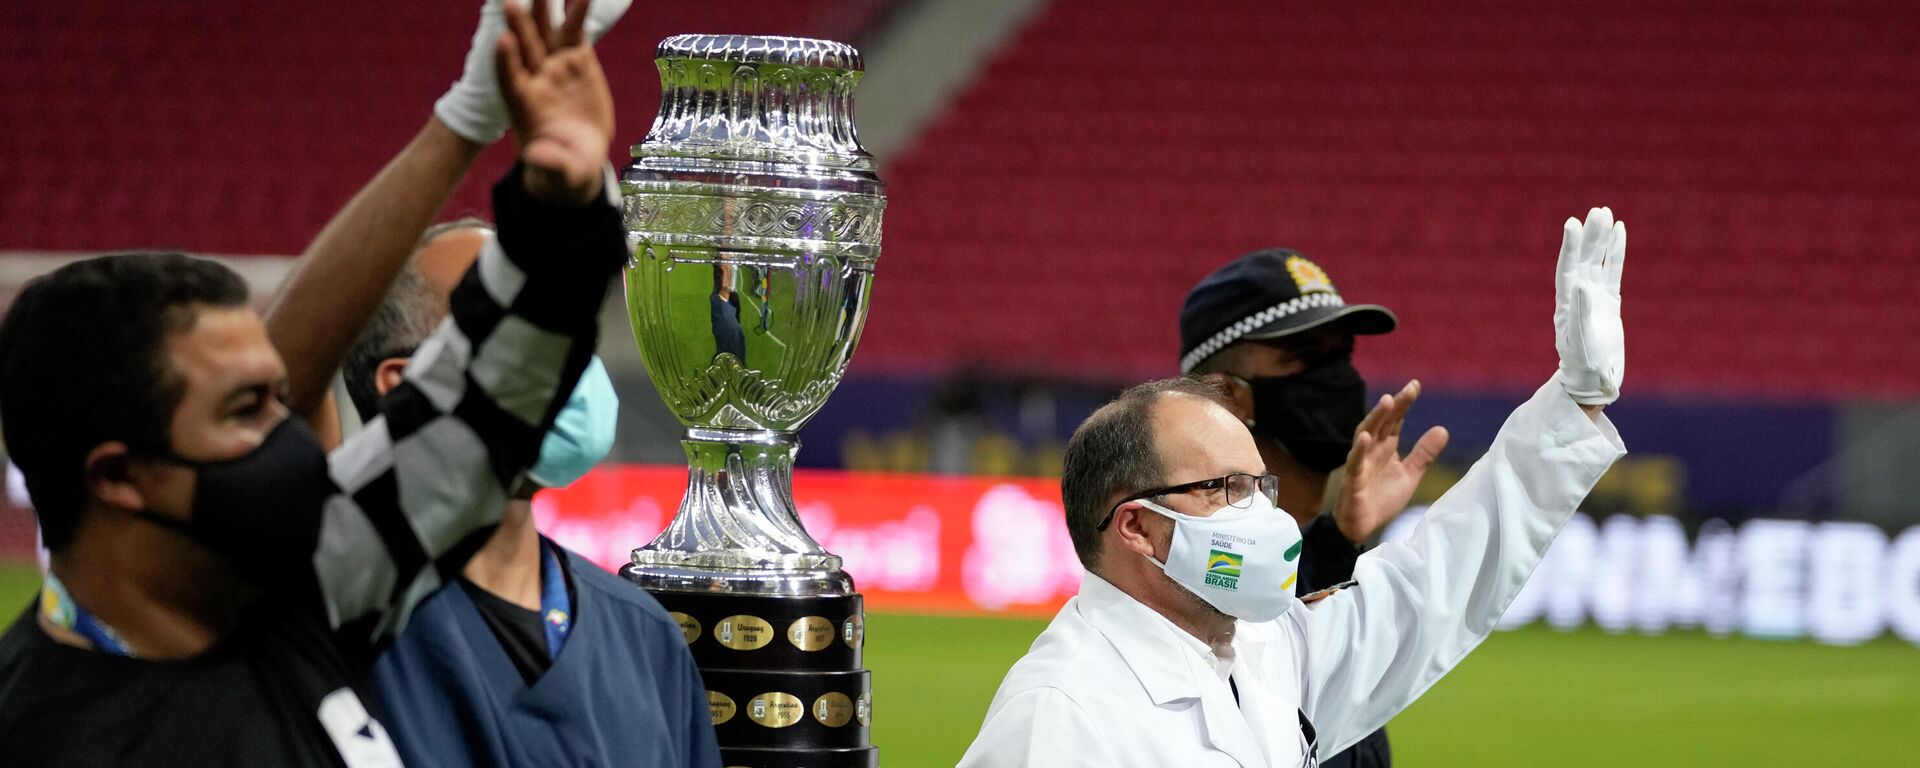 El trofeo de la Copa América 2021 es presentado por hombres con trajes de médicos y enfermeros - Sputnik Mundo, 1920, 14.06.2021